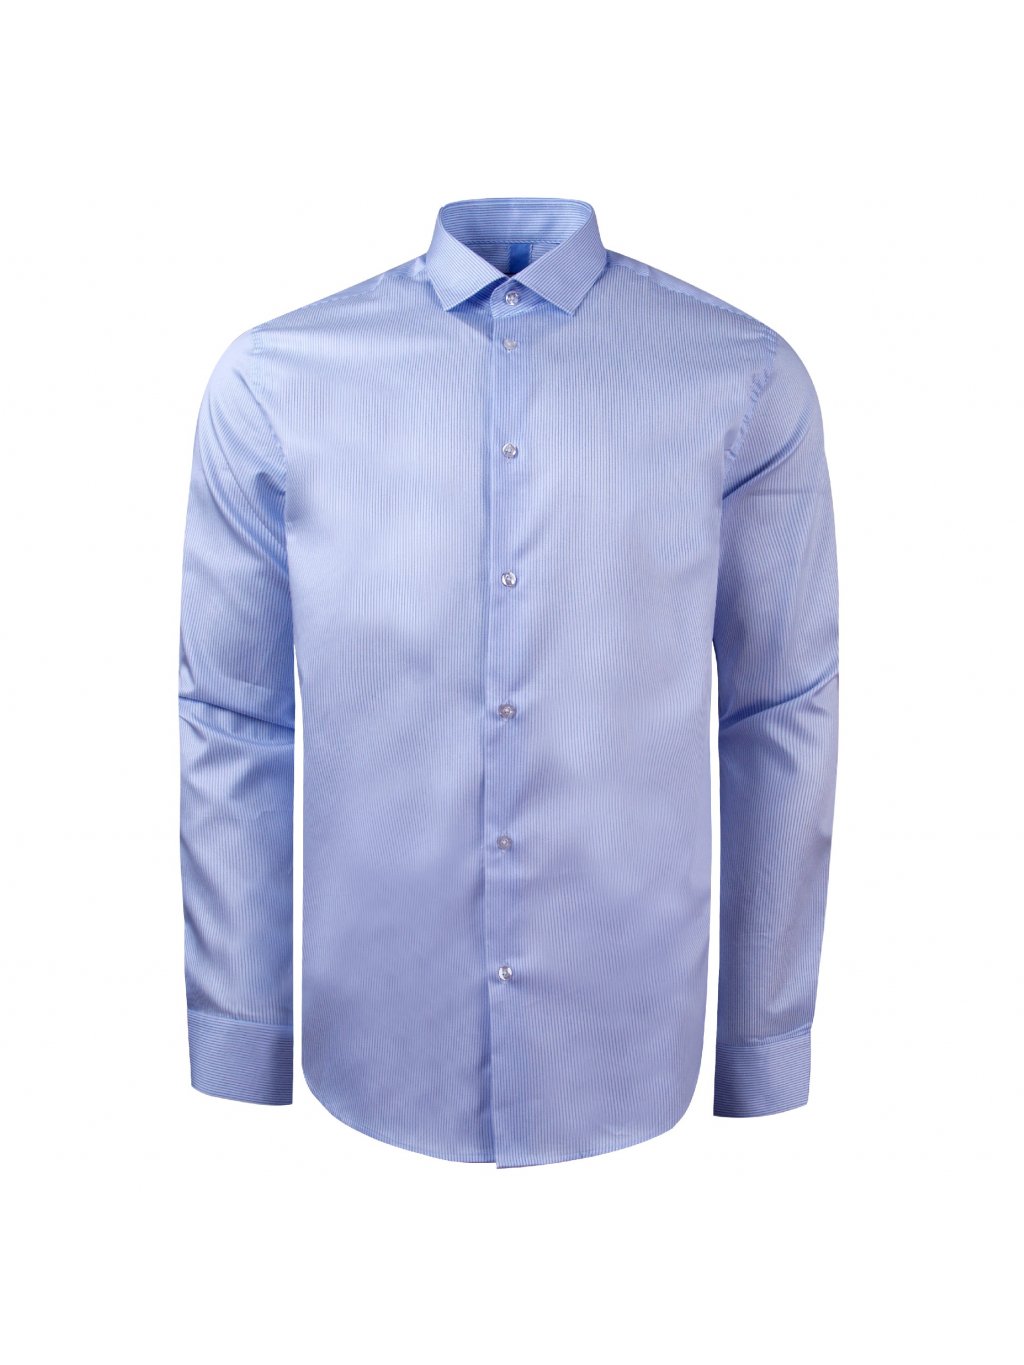 Pánská košile FERATT modern světle modrá